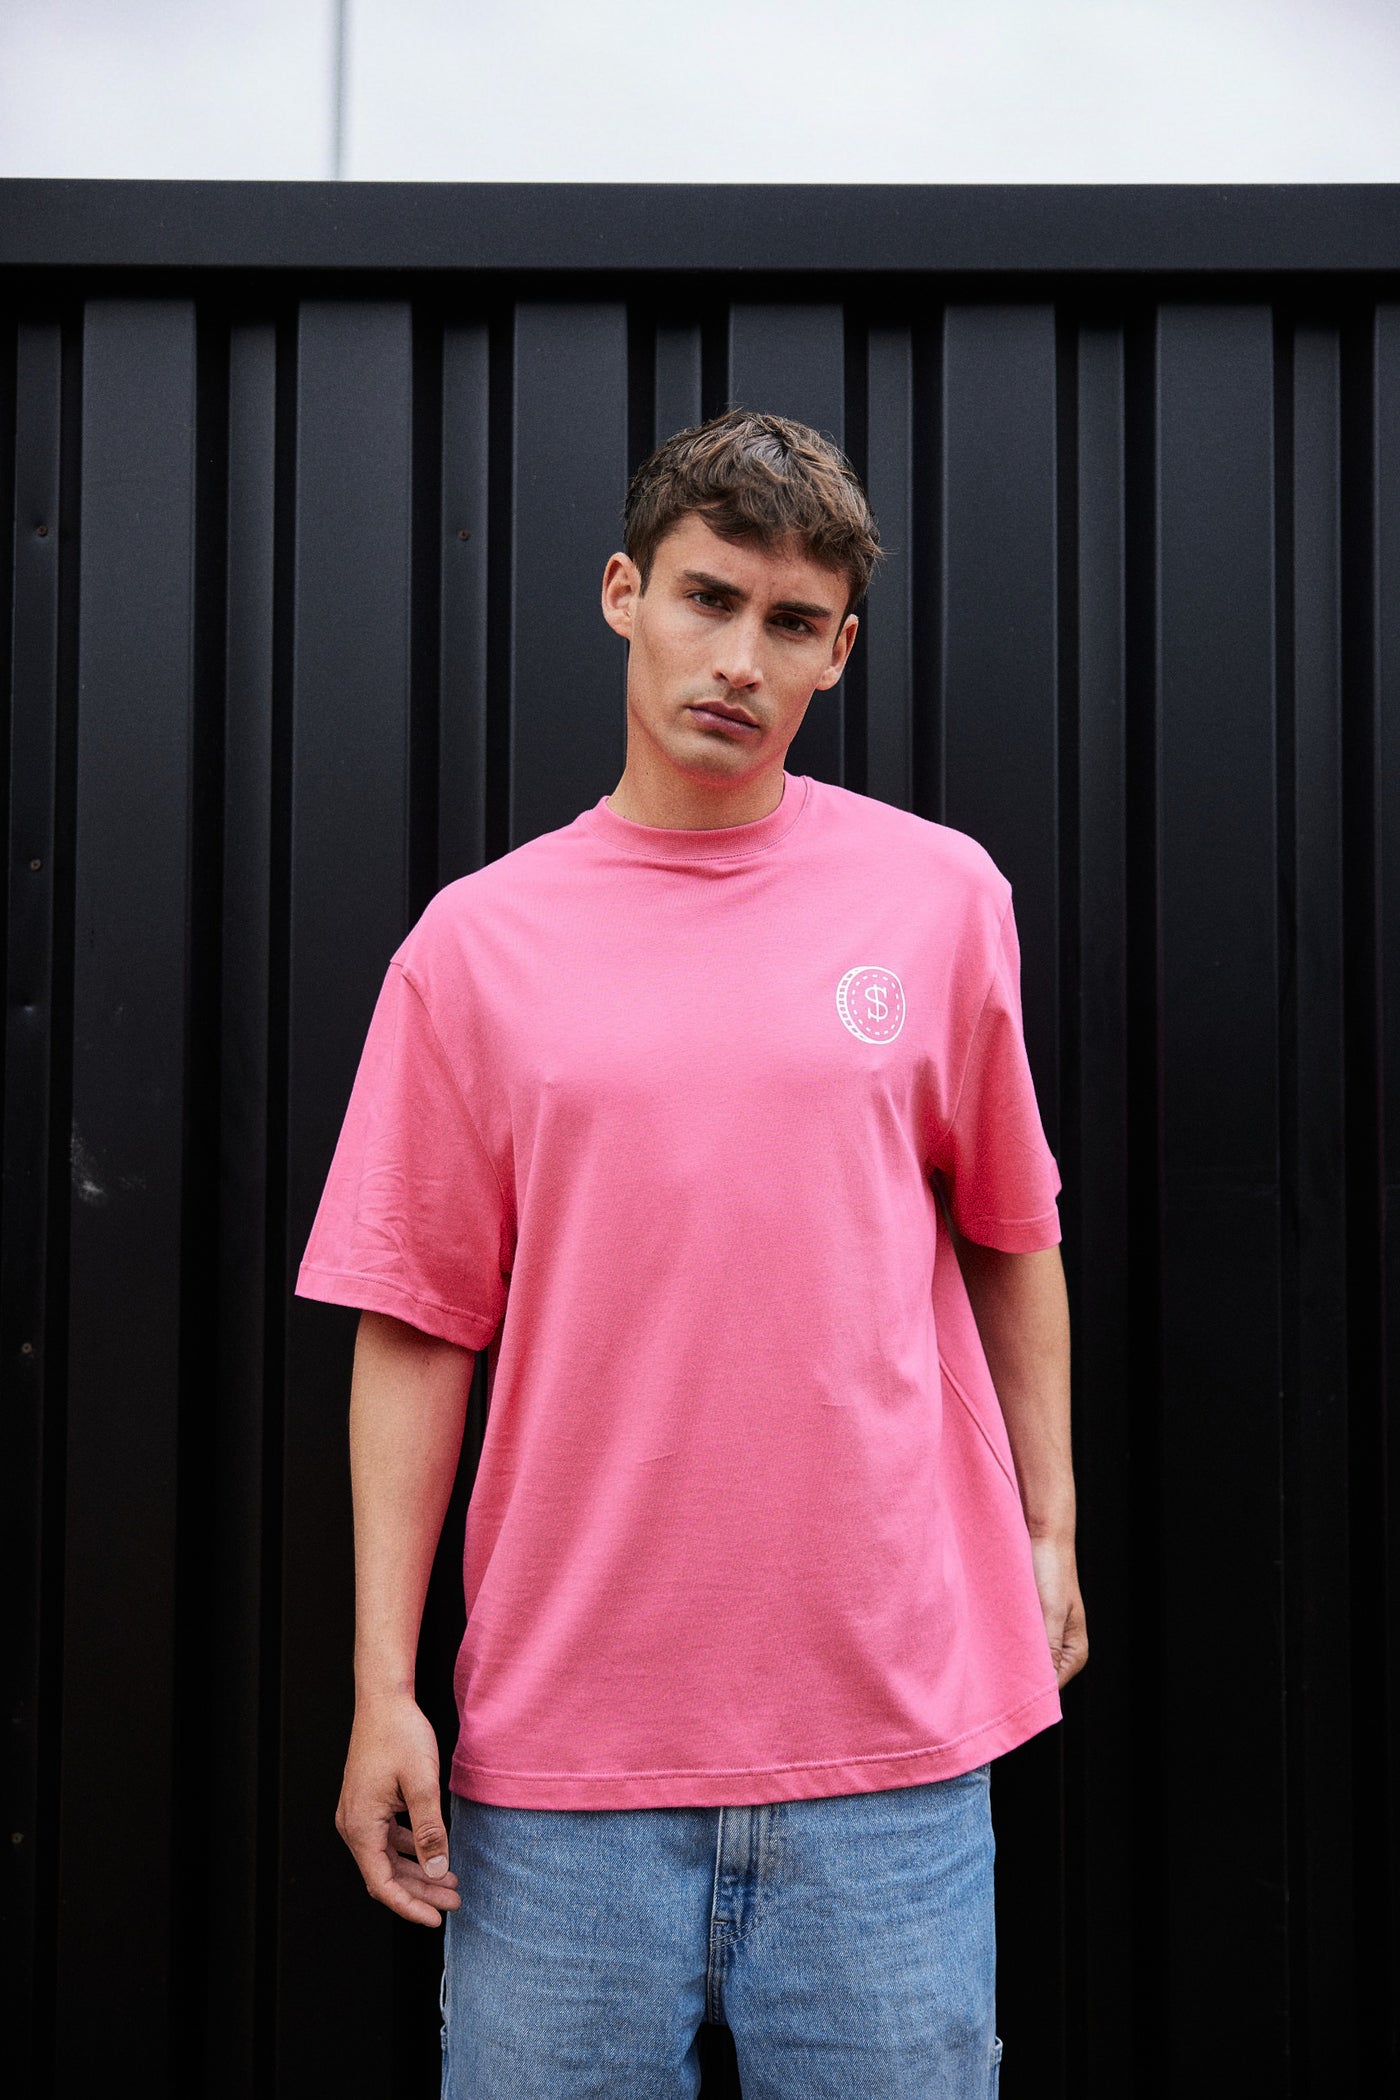 Super Rich Kids T-Shirt 'Hot Pink'